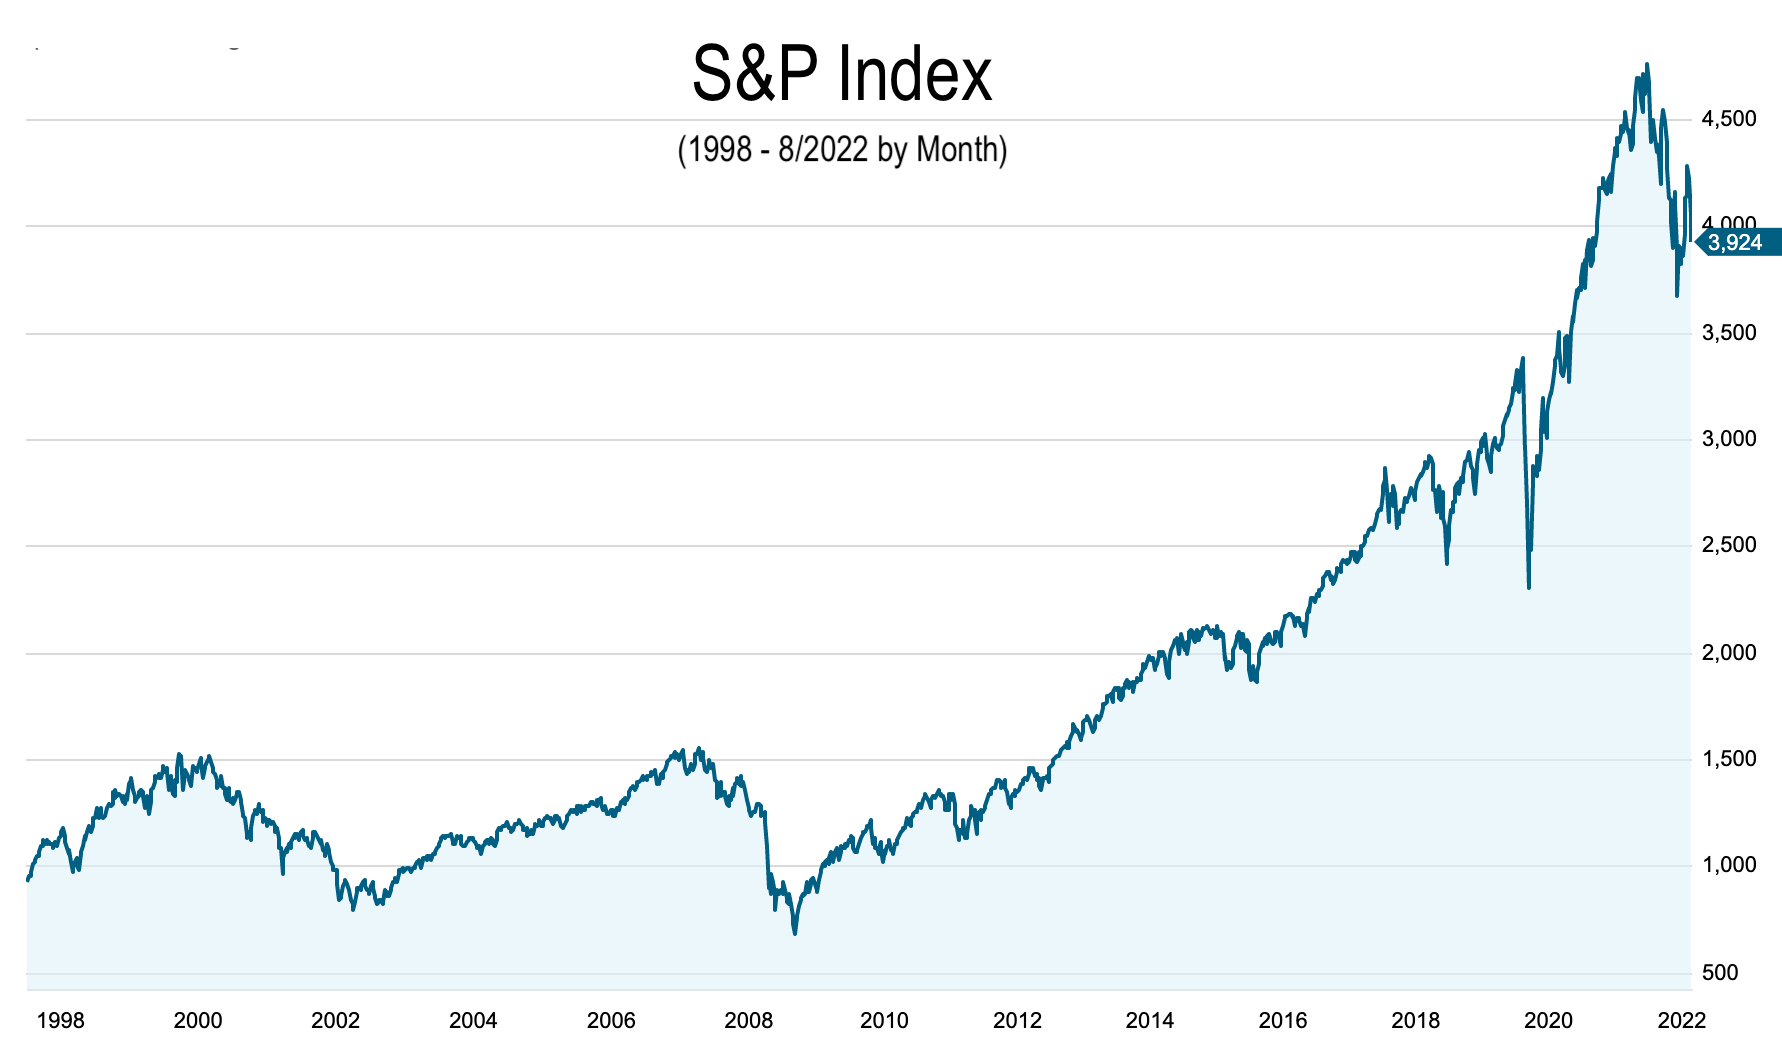 S&P Index 1998-Aug 2022